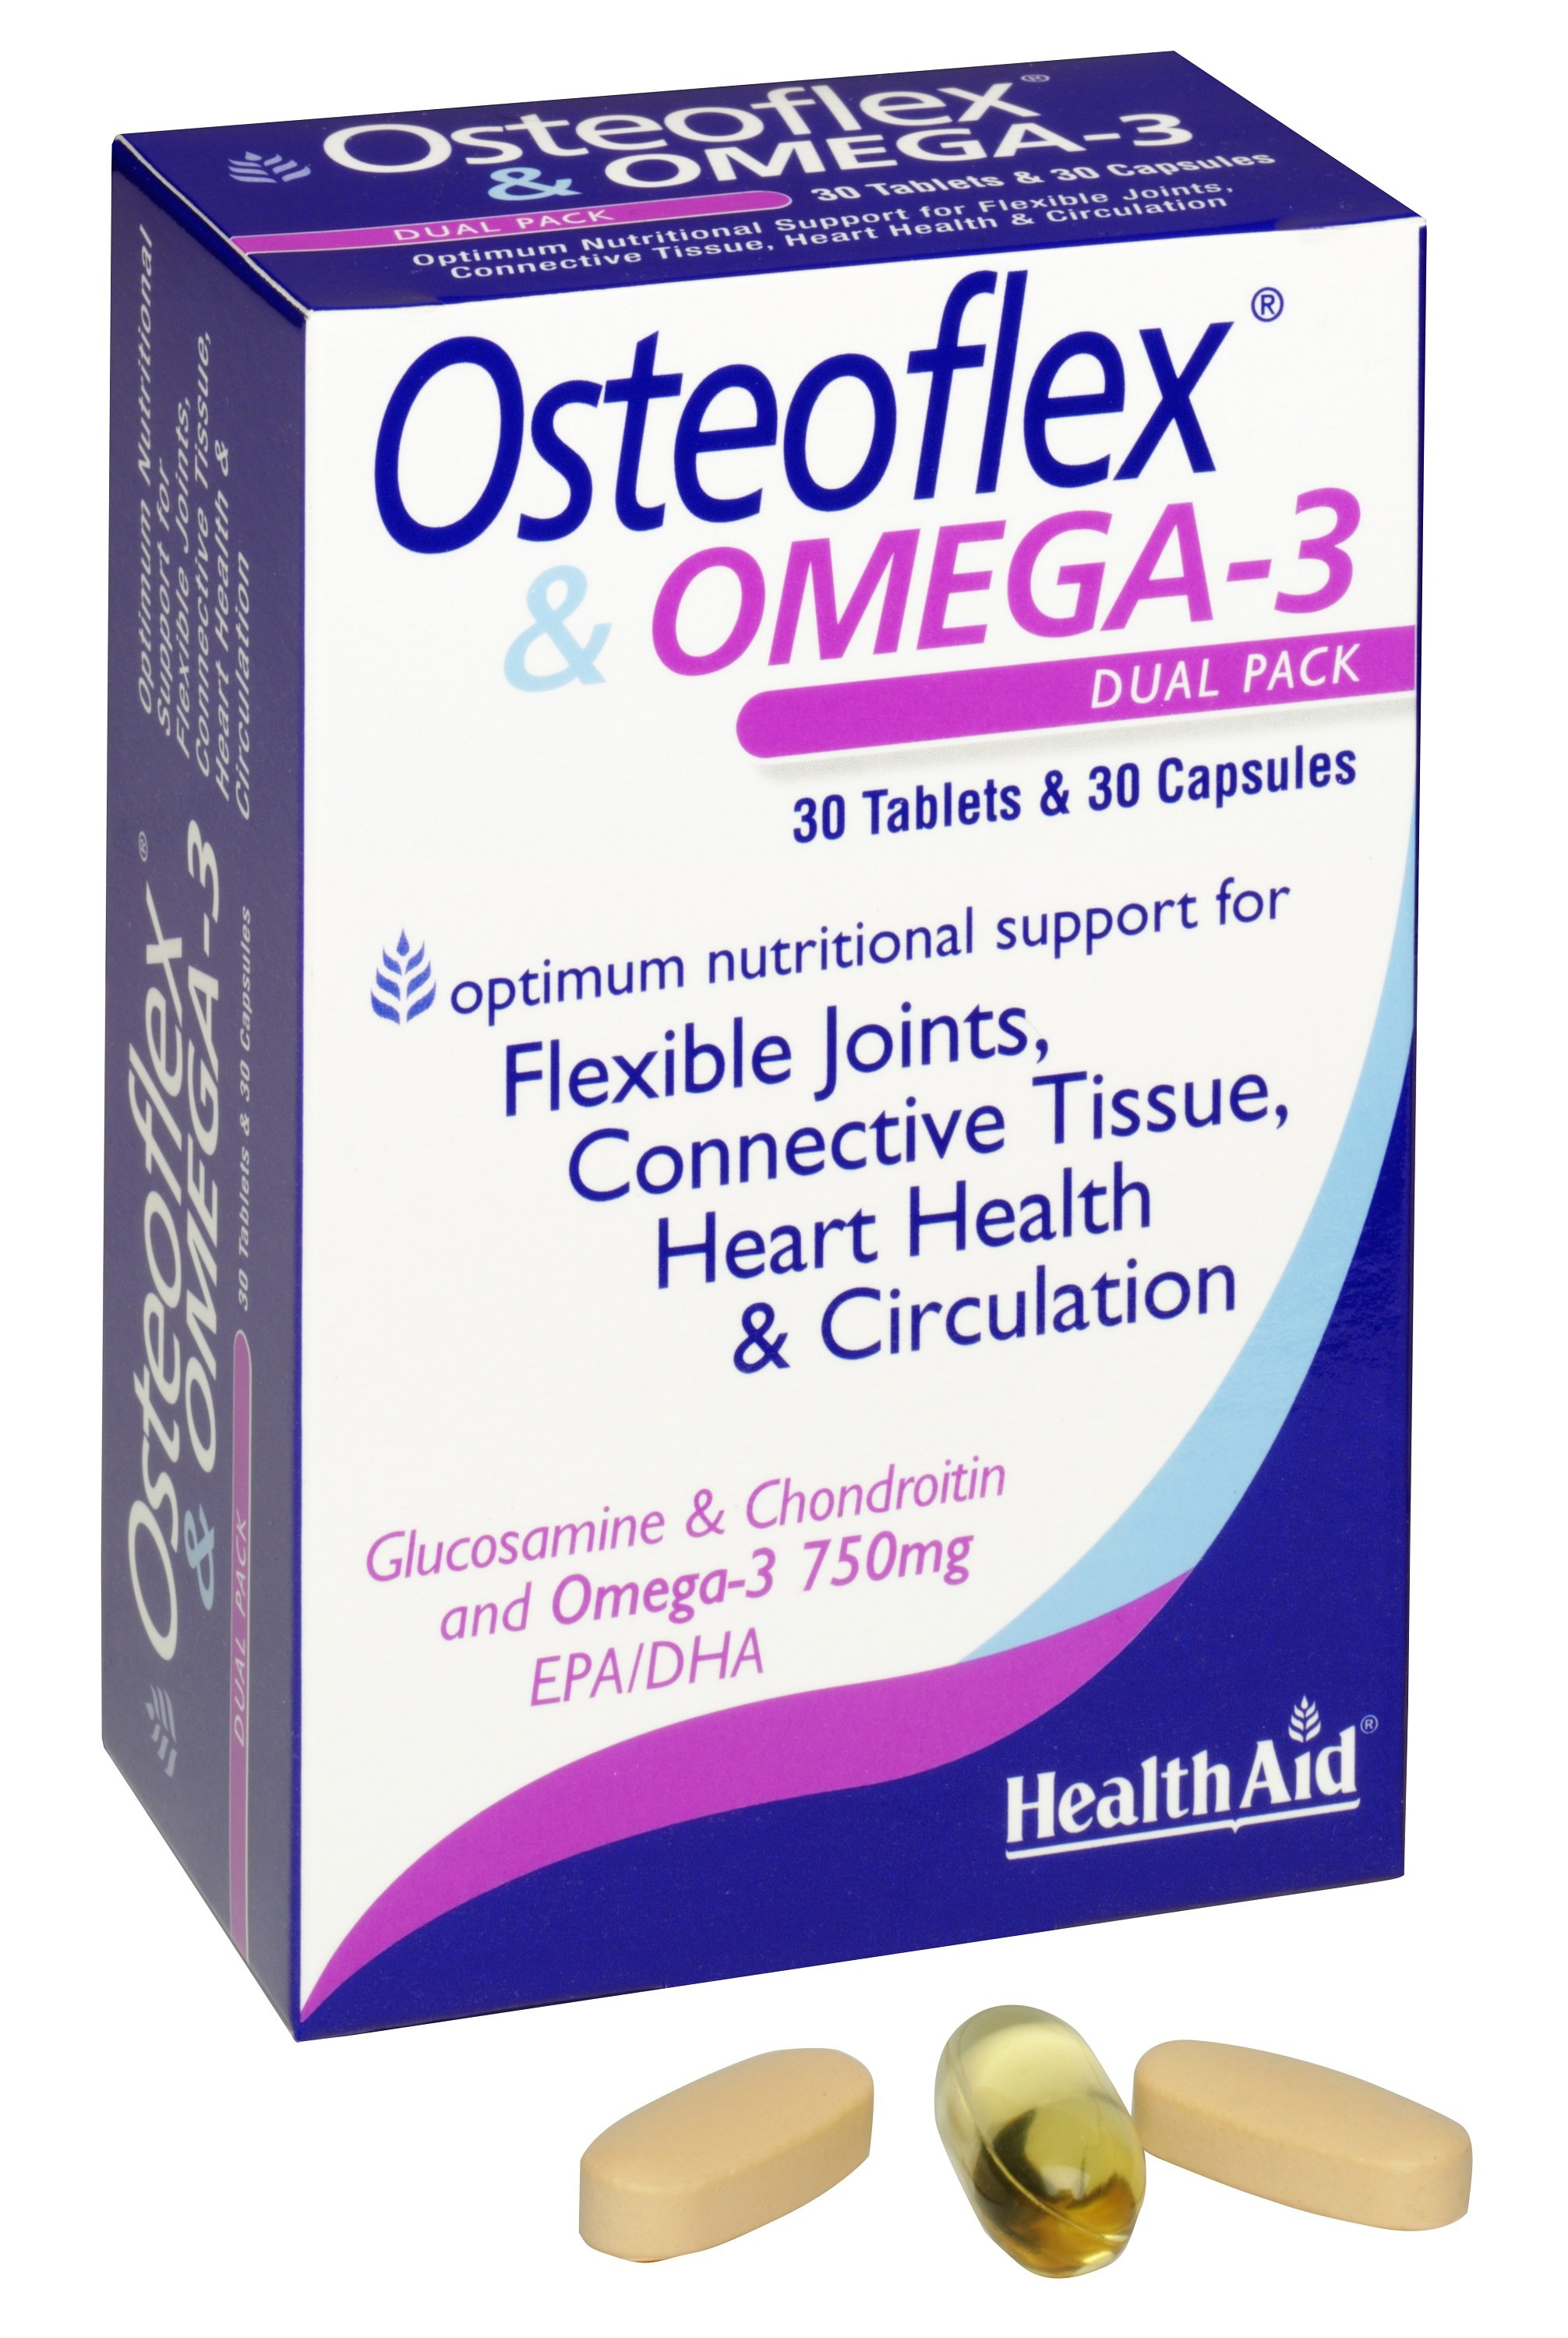 HealthAid Osteoflex & Omega 3 Capsules & Tablets 30 each